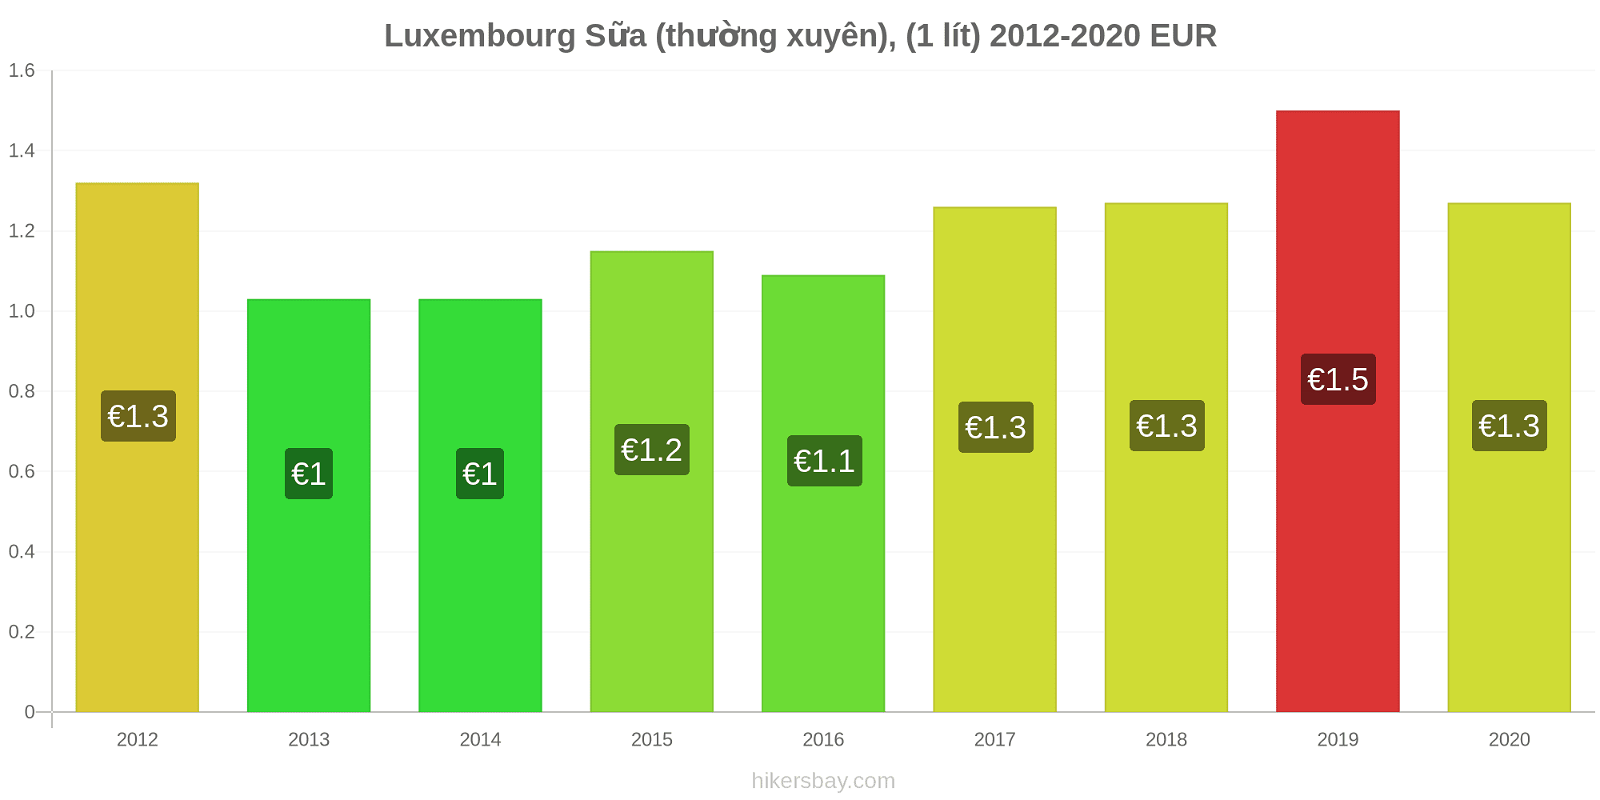 Luxembourg thay đổi giá Sữa (thường xuyên), (1 lít) hikersbay.com